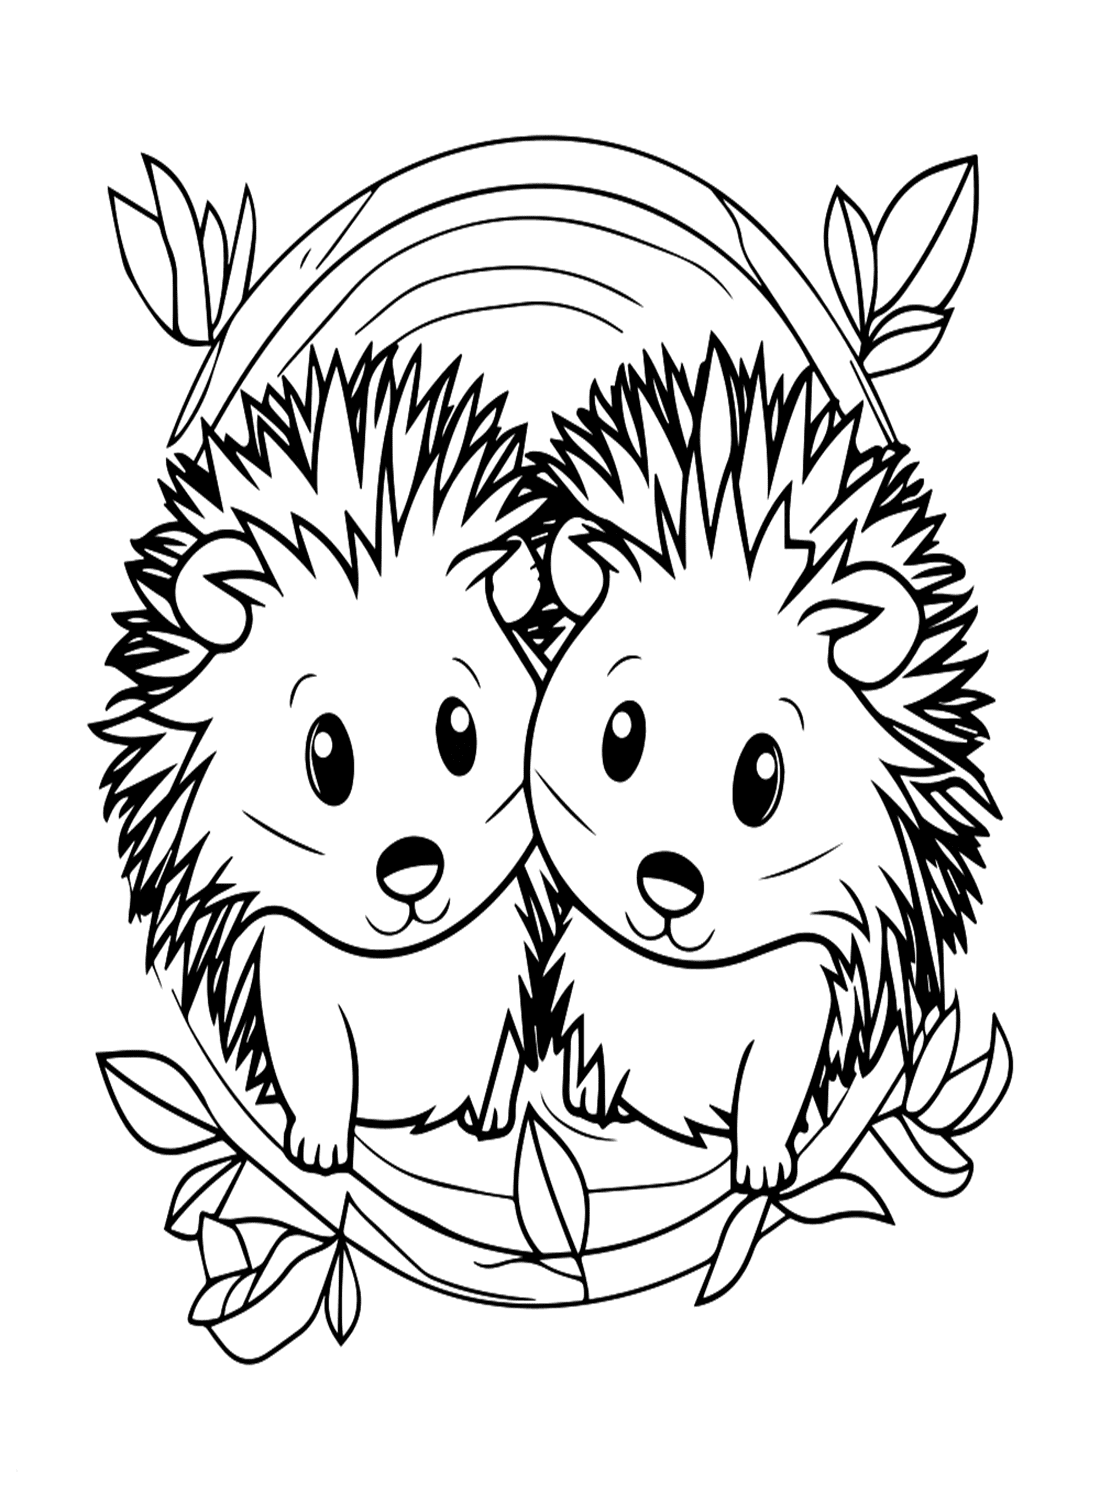 Hoja para colorear de pareja de puercoespines de Porcupine